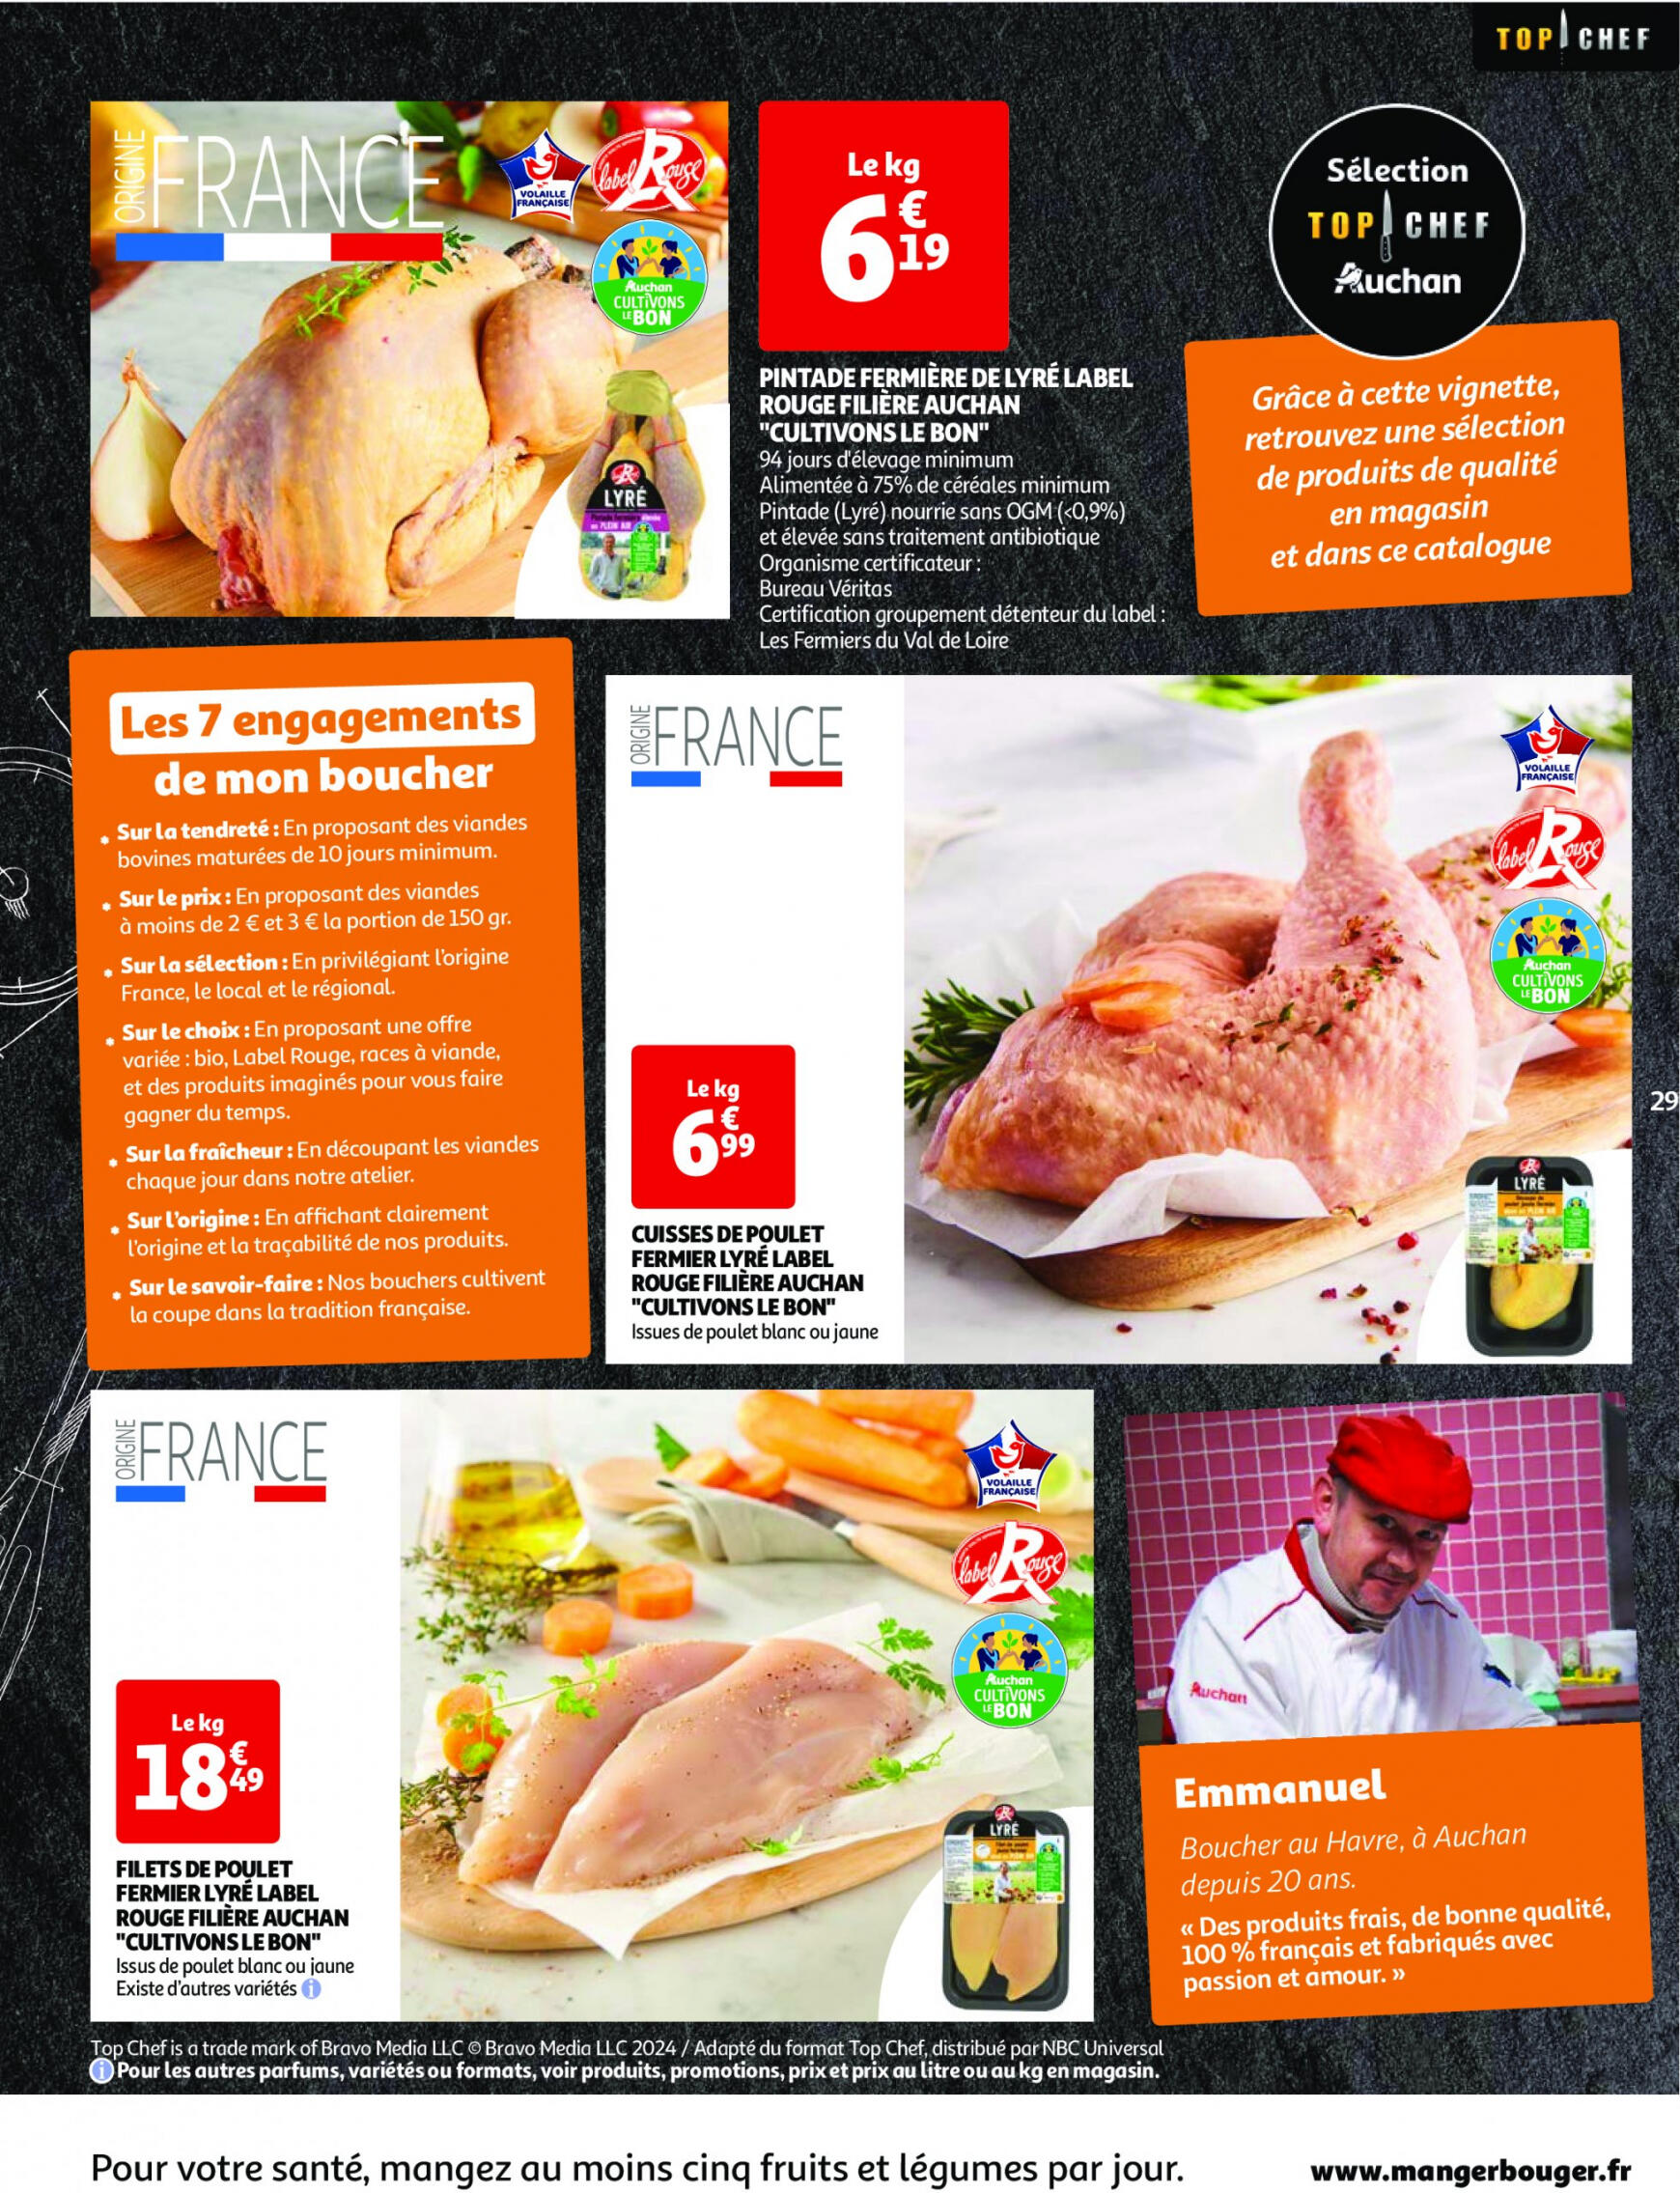 auchan - Prospectus Auchan actuel 30.04. - 06.05. - page: 29